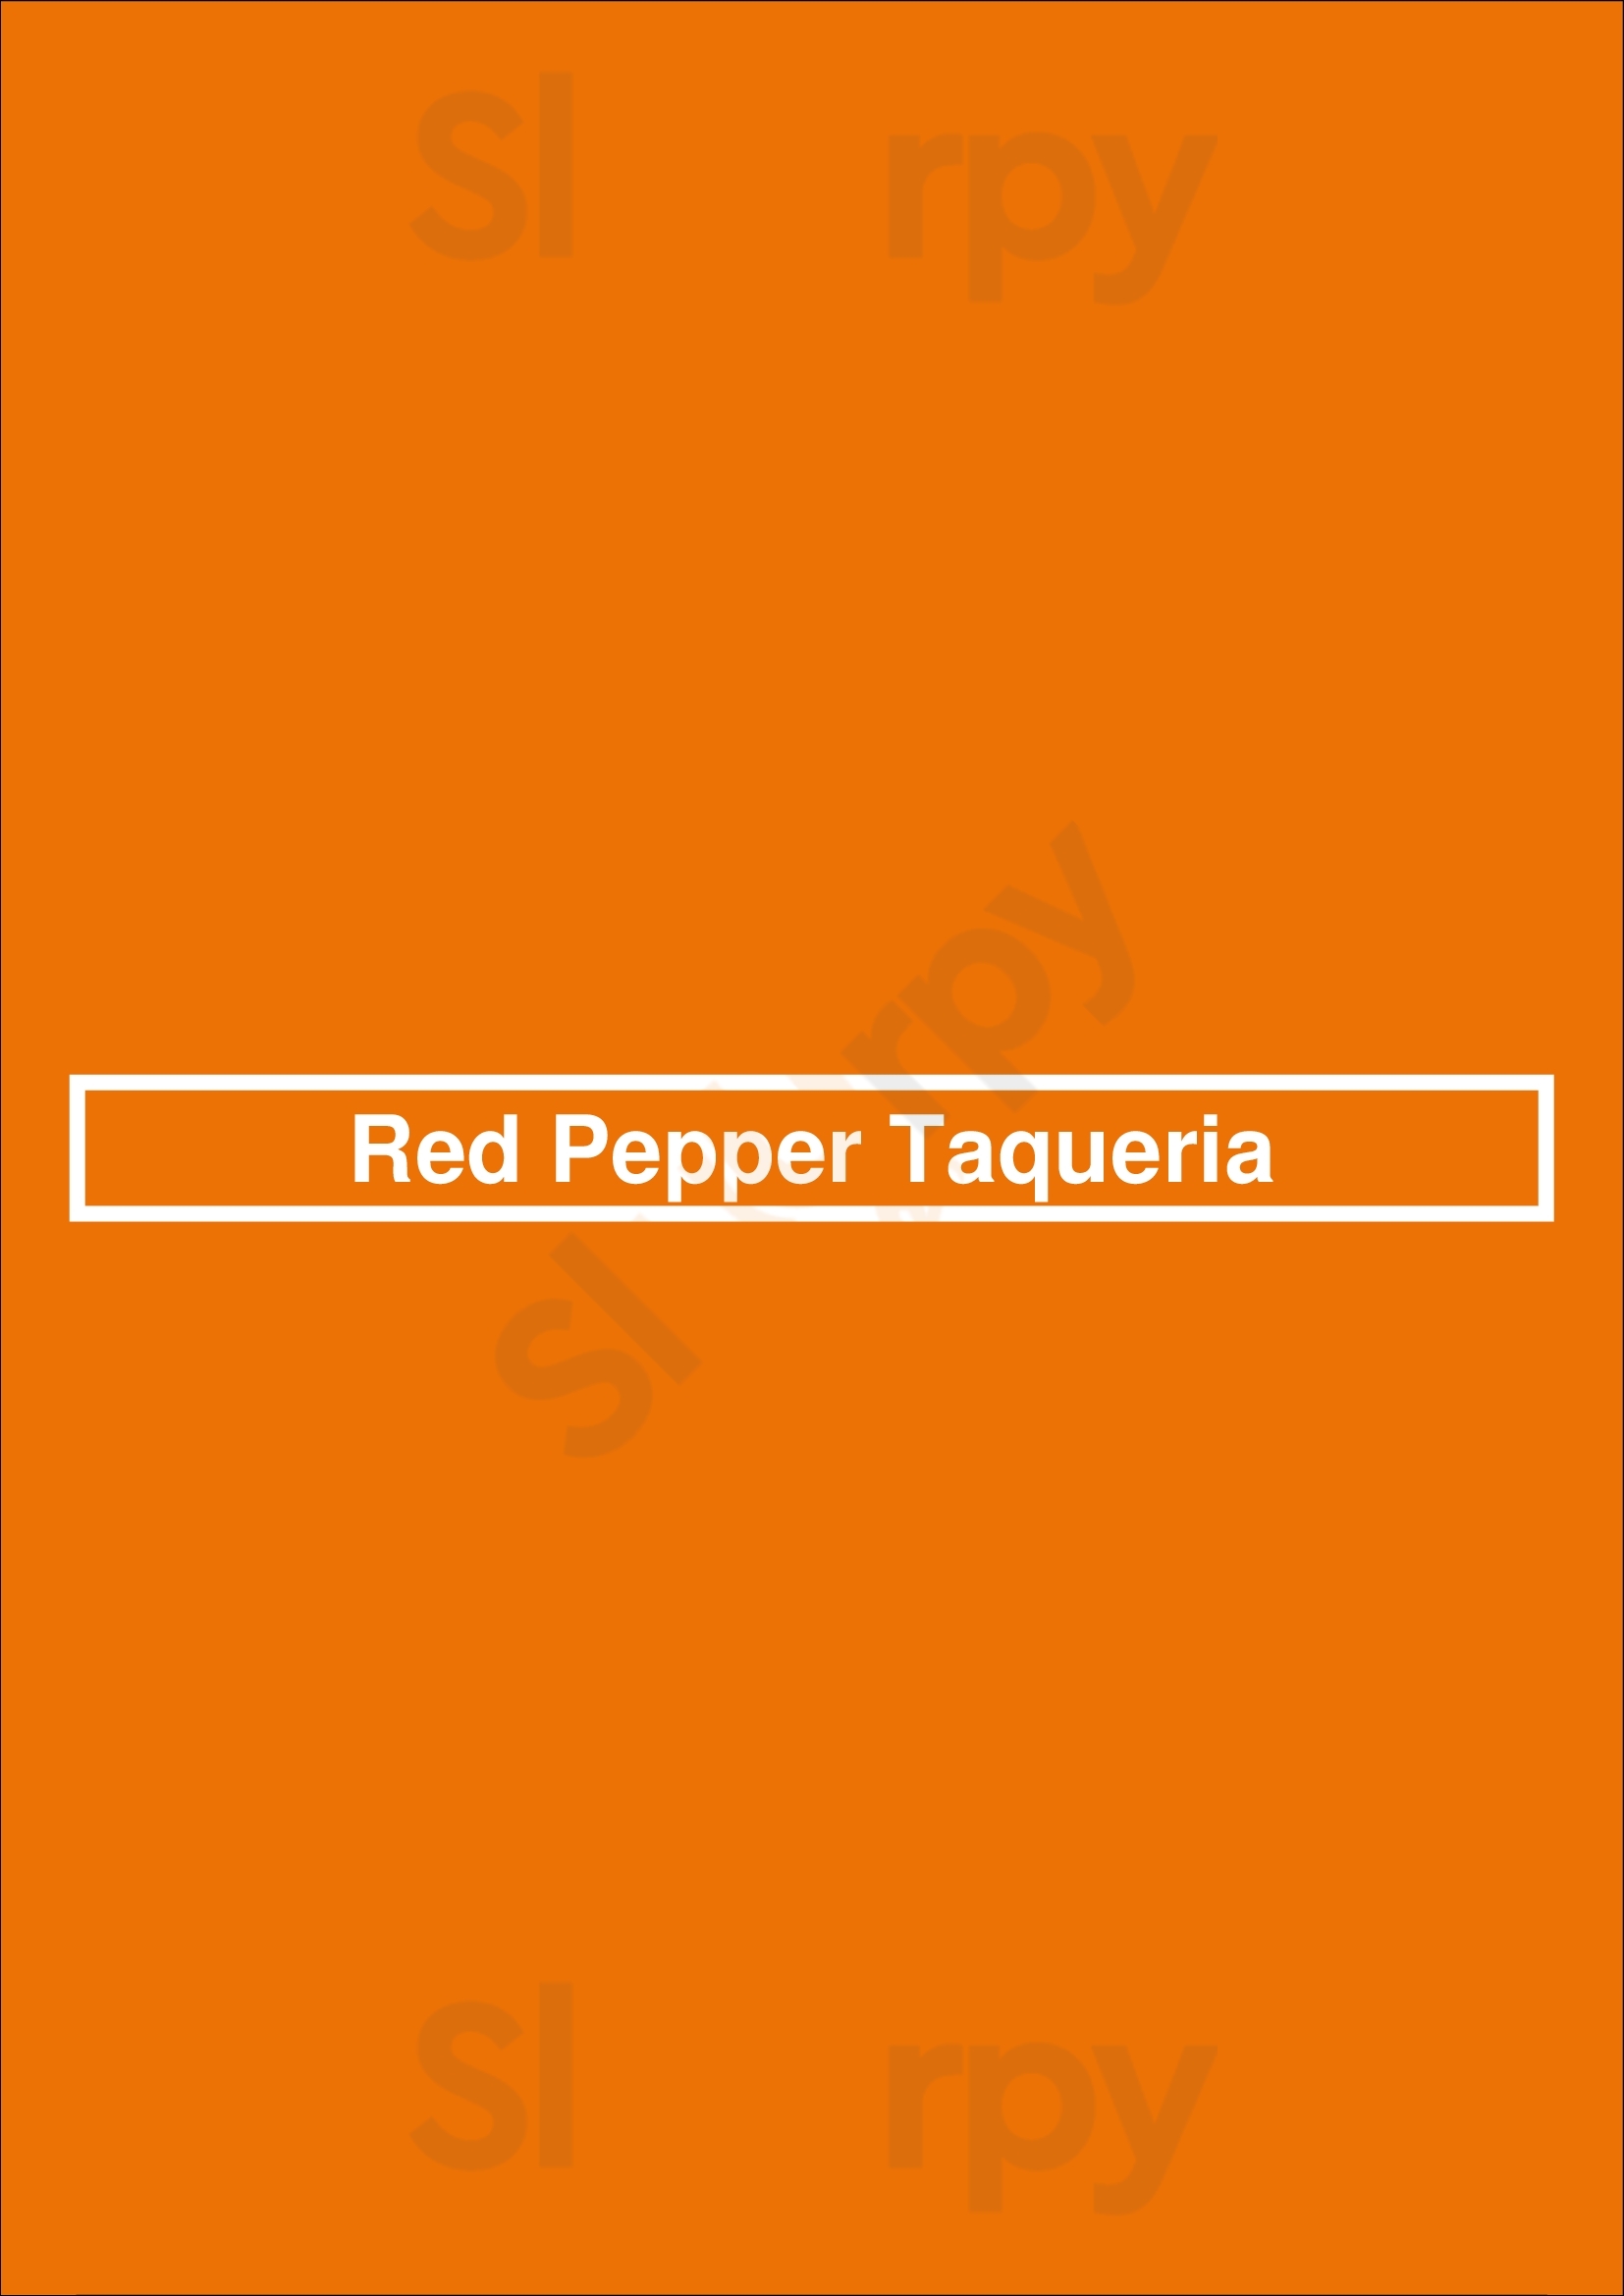 Red Pepper Taqueria Atlanta Menu - 1